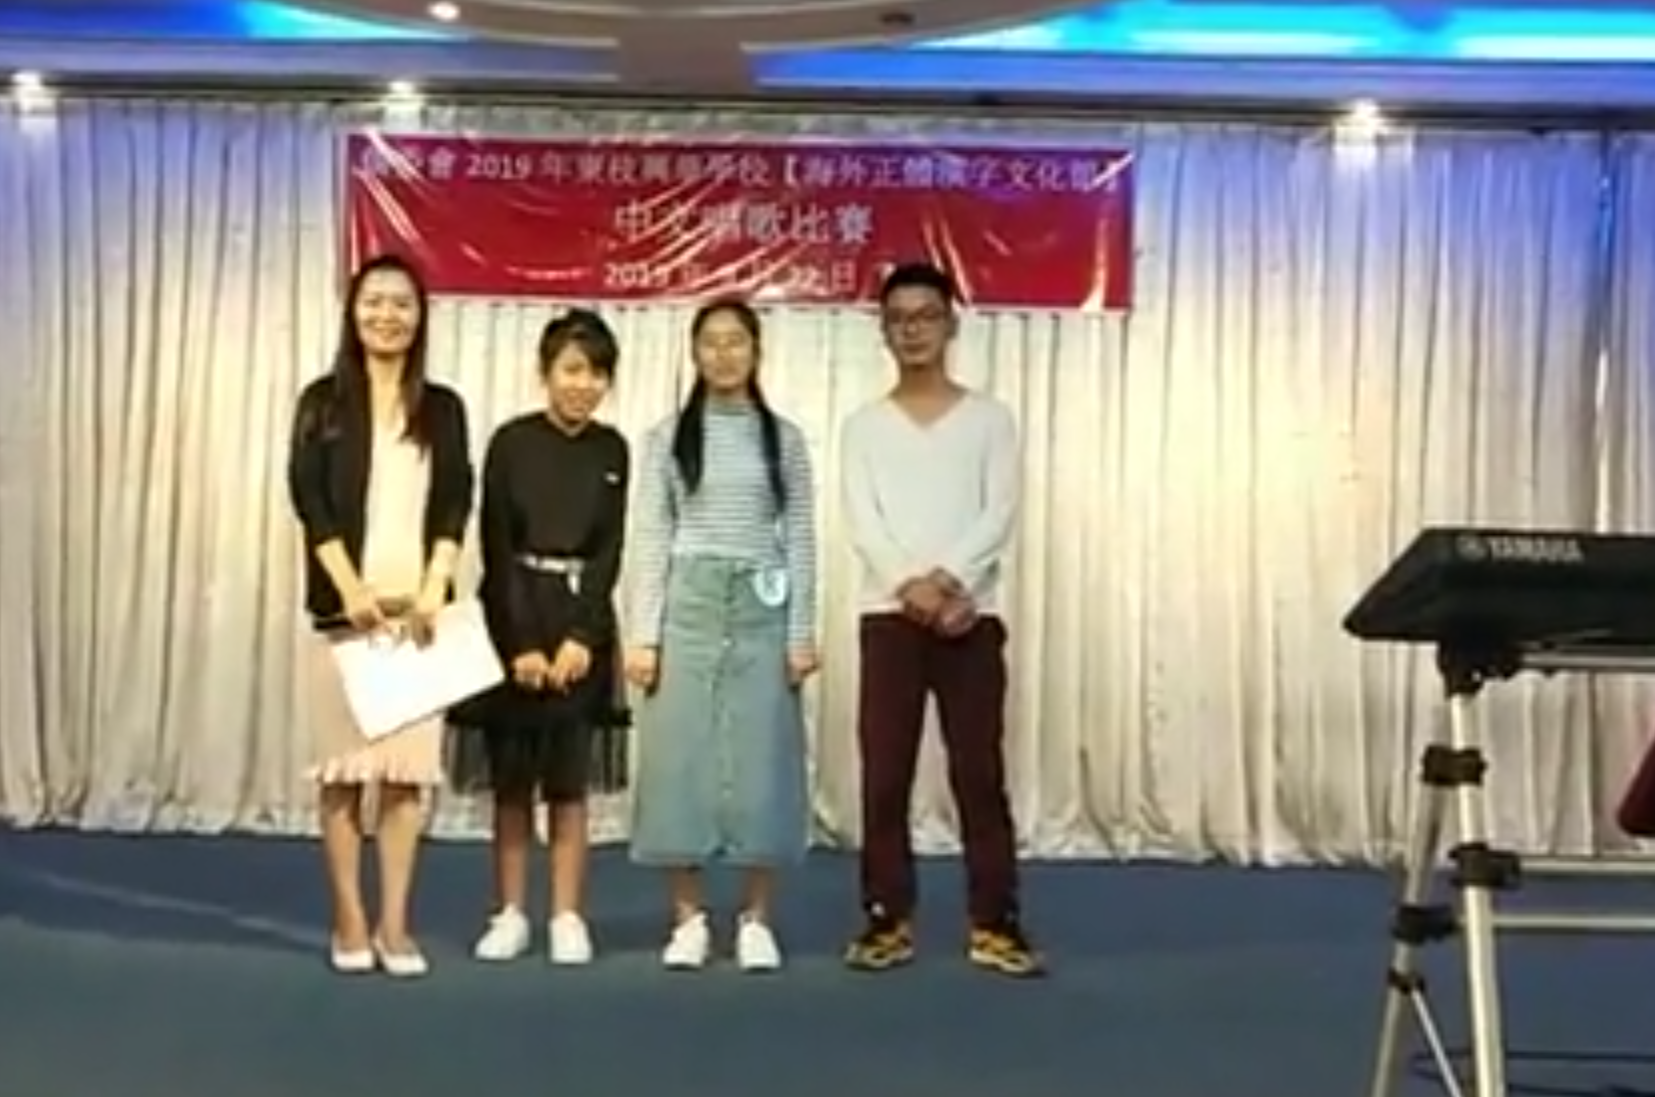 東枝興華學校2019年秋季中文歌唱比賽  提倡尊師重道圖片